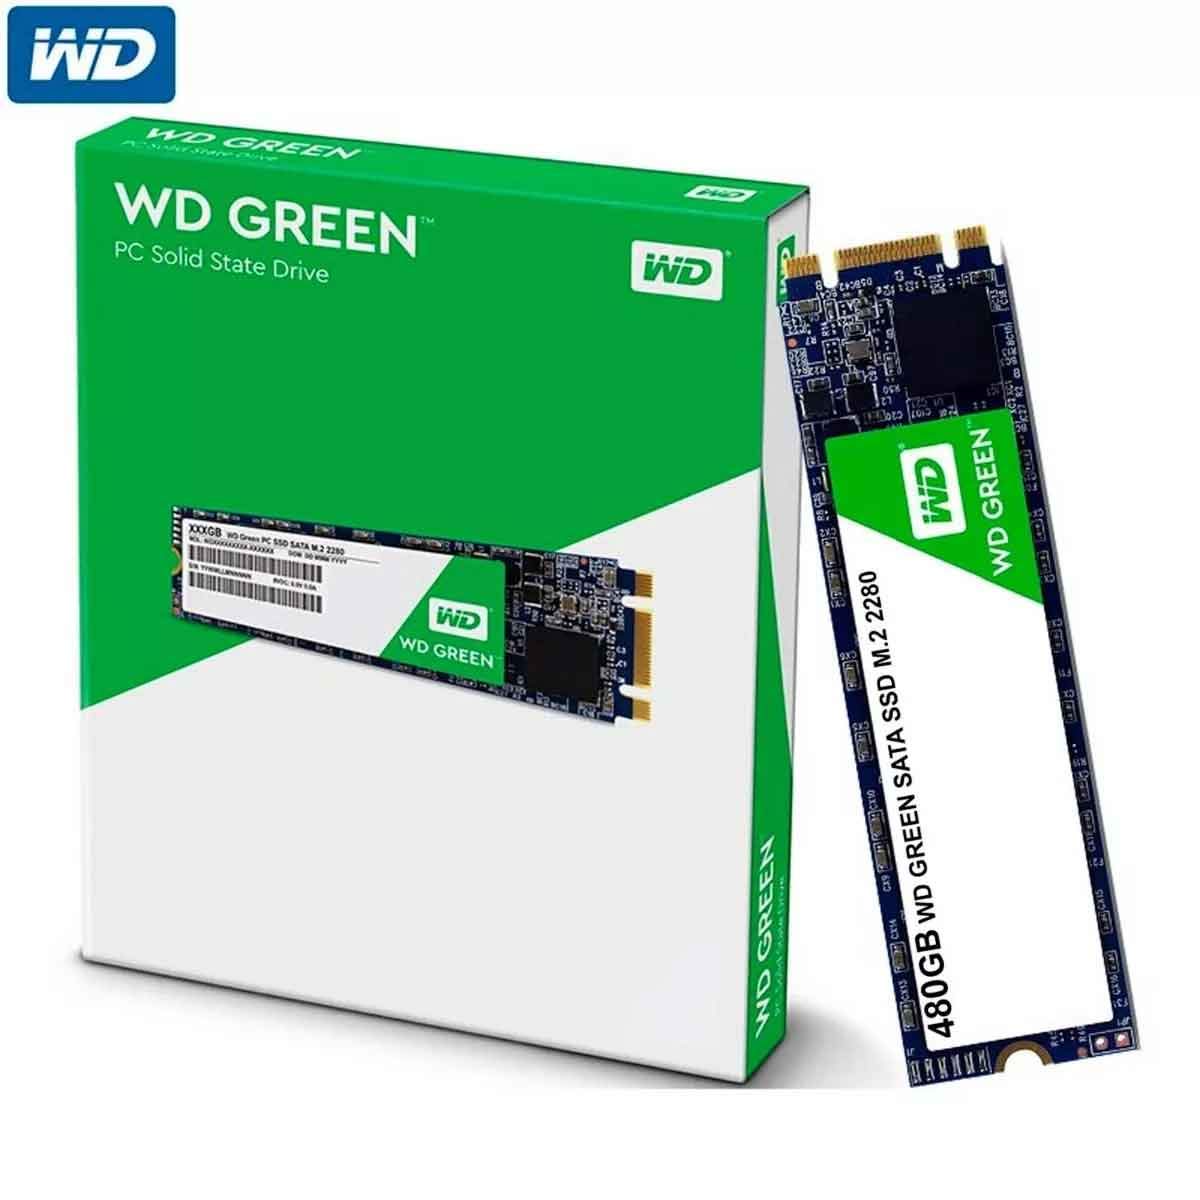 WD GREEN SSD 480GB M.2